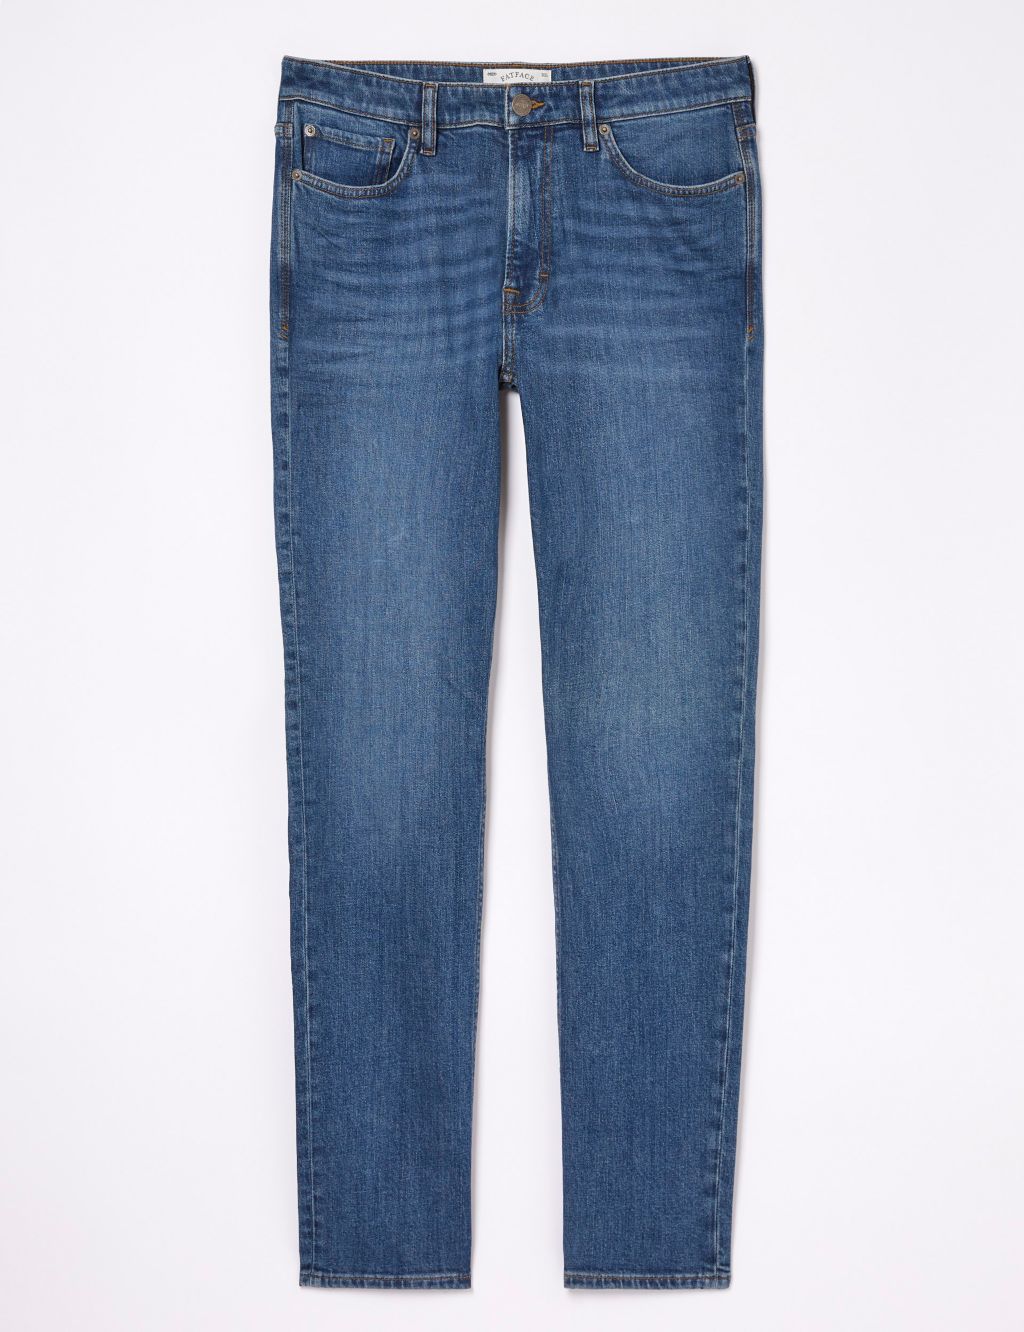 Slim Fit 5 Pocket Jeans image 2